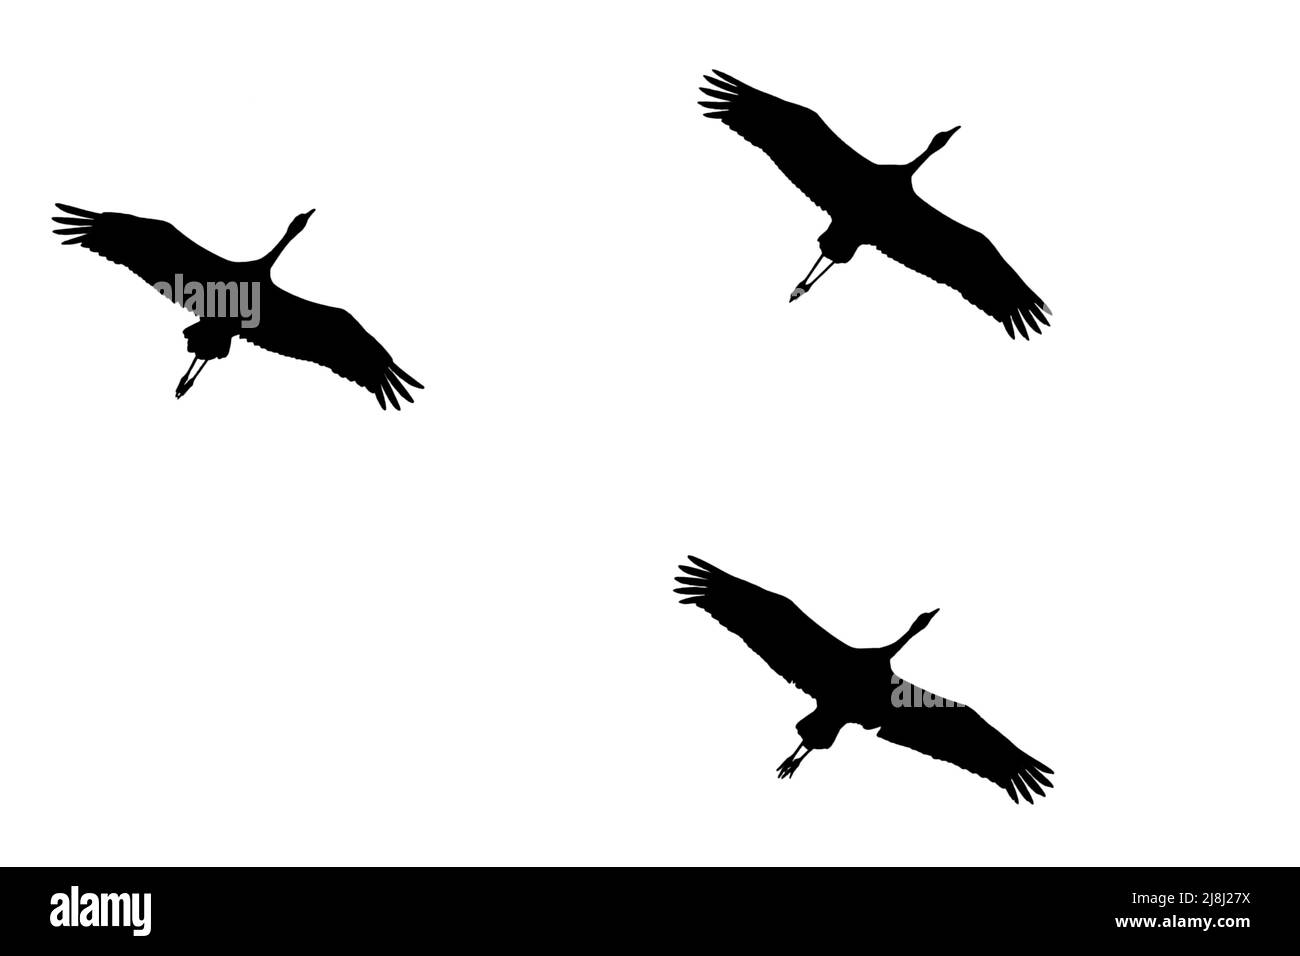 Silhouette von gewöhnlichen Kranichen / eurasischen Kran (Grus grus) Herde im Flug vor weißem Hintergrund skizziert, um Flügel, Kopf und Schwanz Formen zeigen Stockfoto